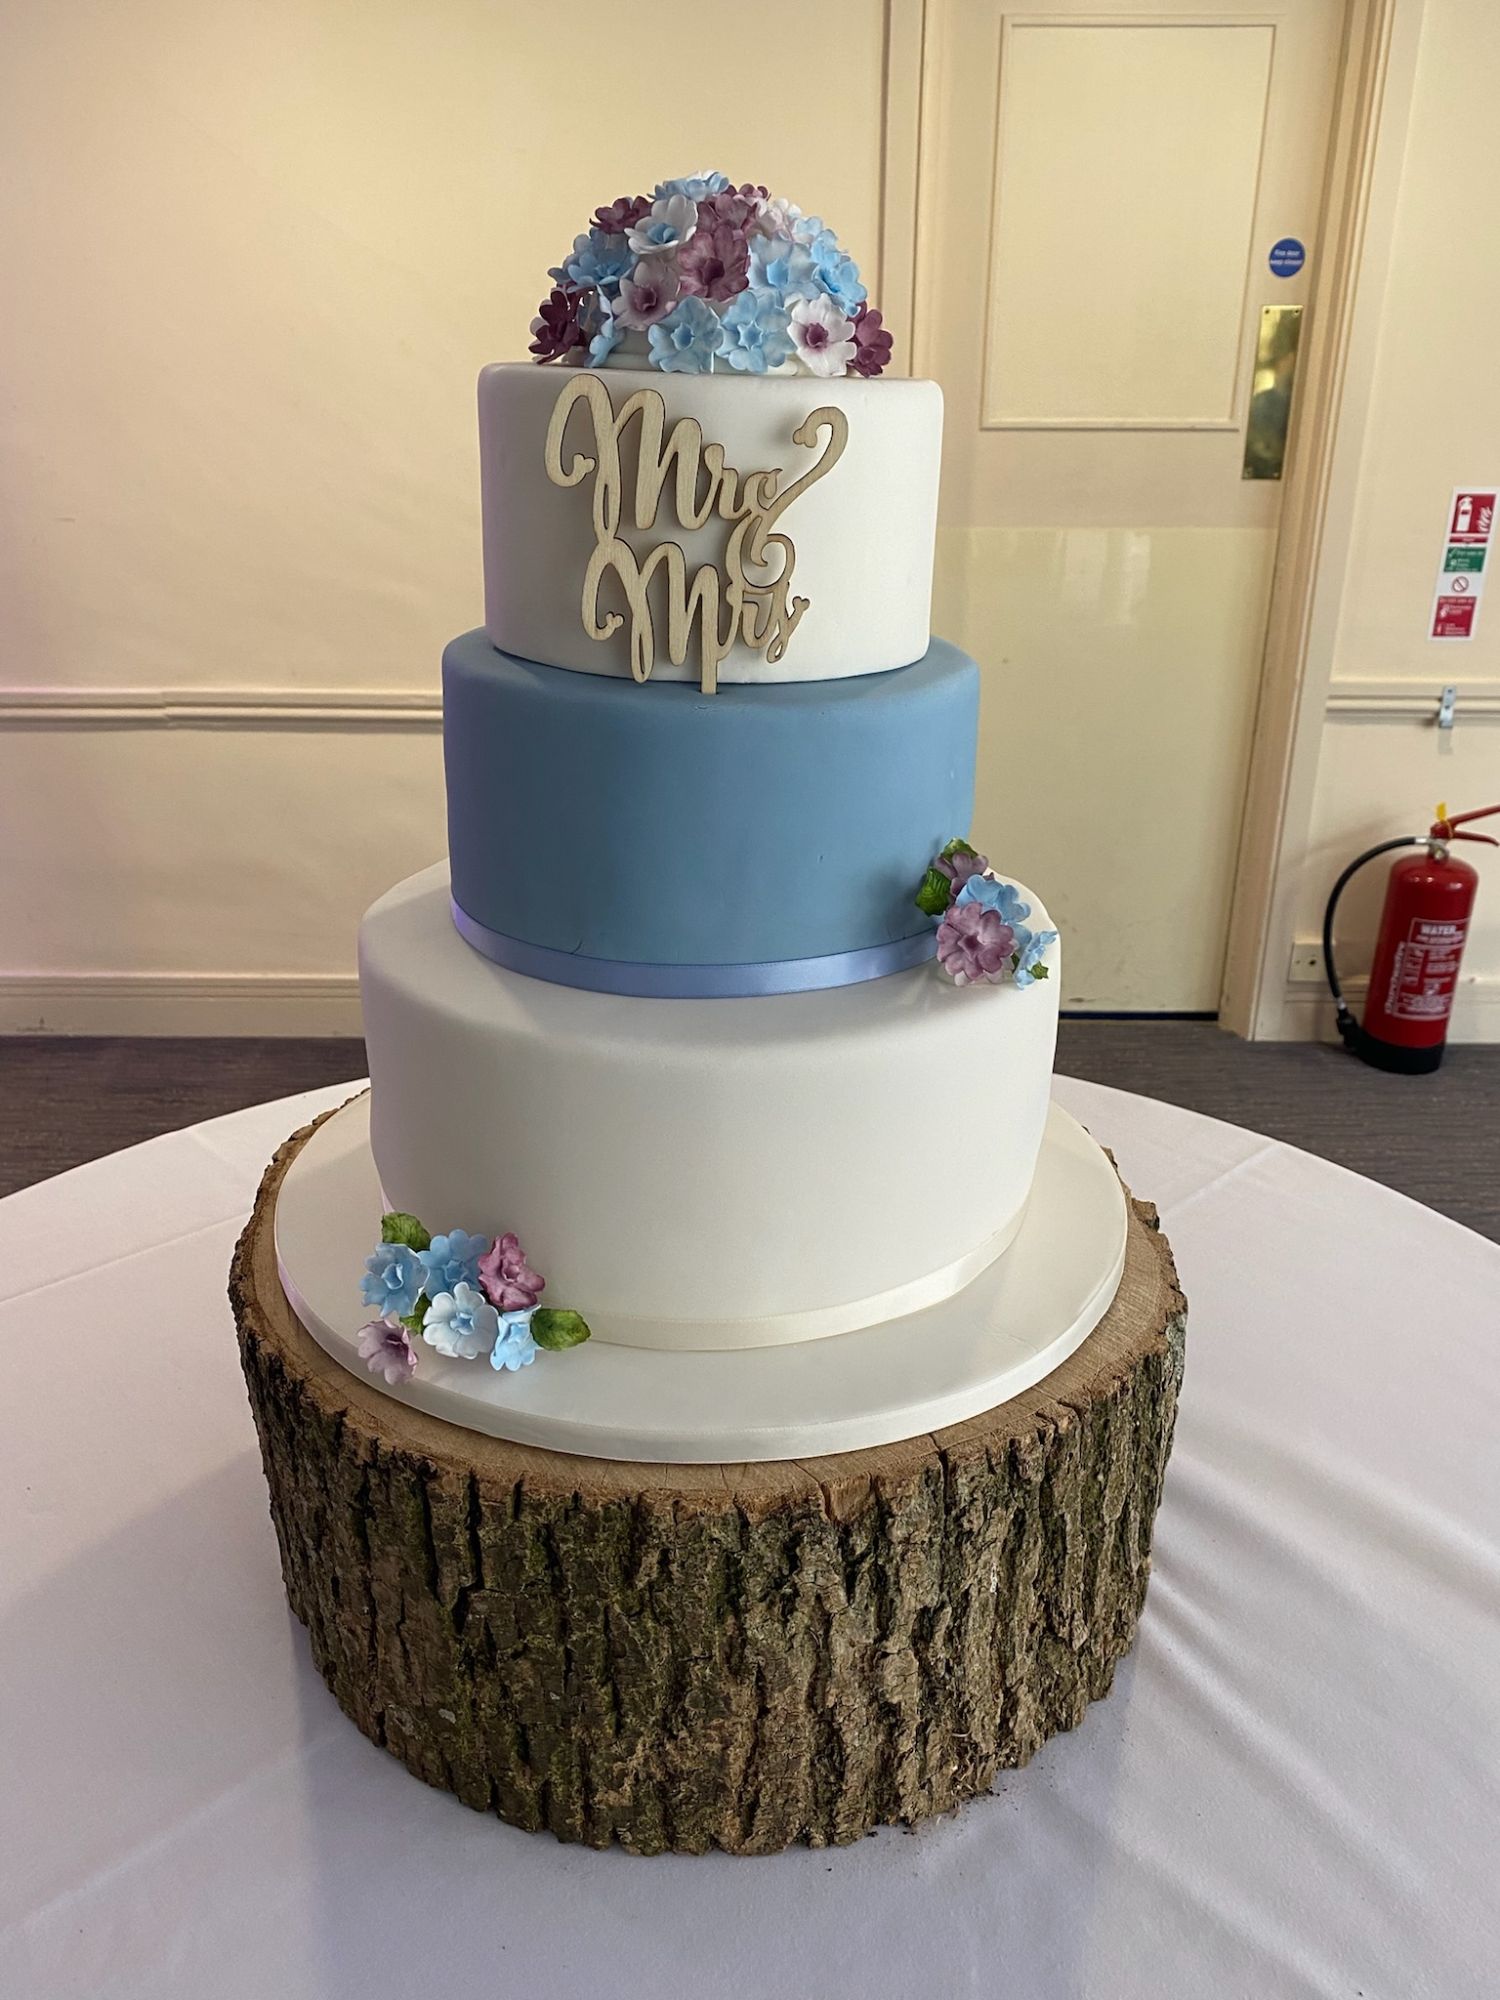 Nlue & White Mr & Mrs Cake